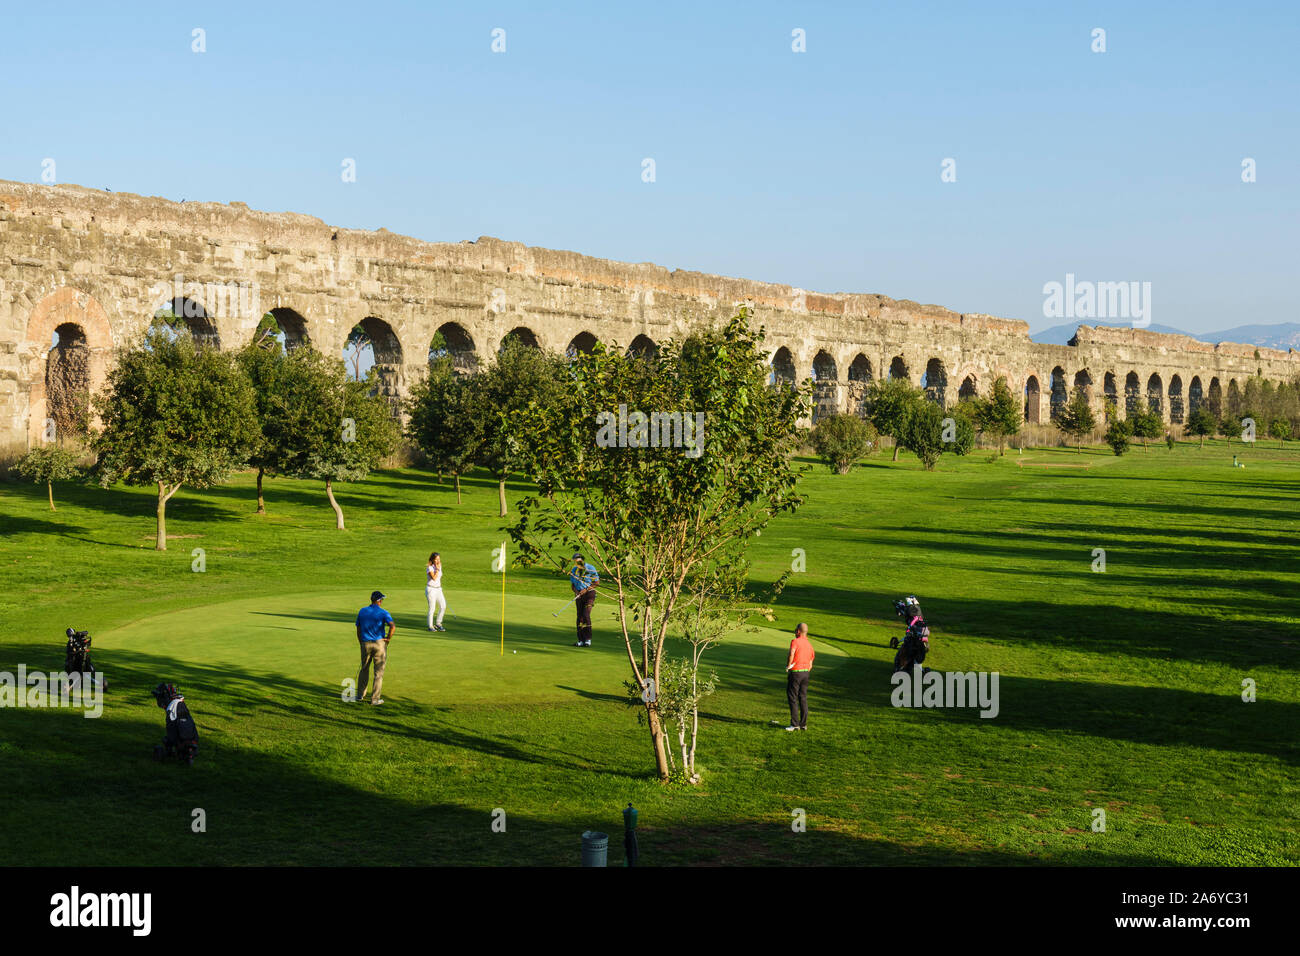 Rom. Italien. Parco degli Acquedotti, Golf spielen Vor dem Hintergrund des antiken Römischen Aquädukt Aqua Claudia, von Kaiser Caligula in 38 AD begonnen. Stockfoto